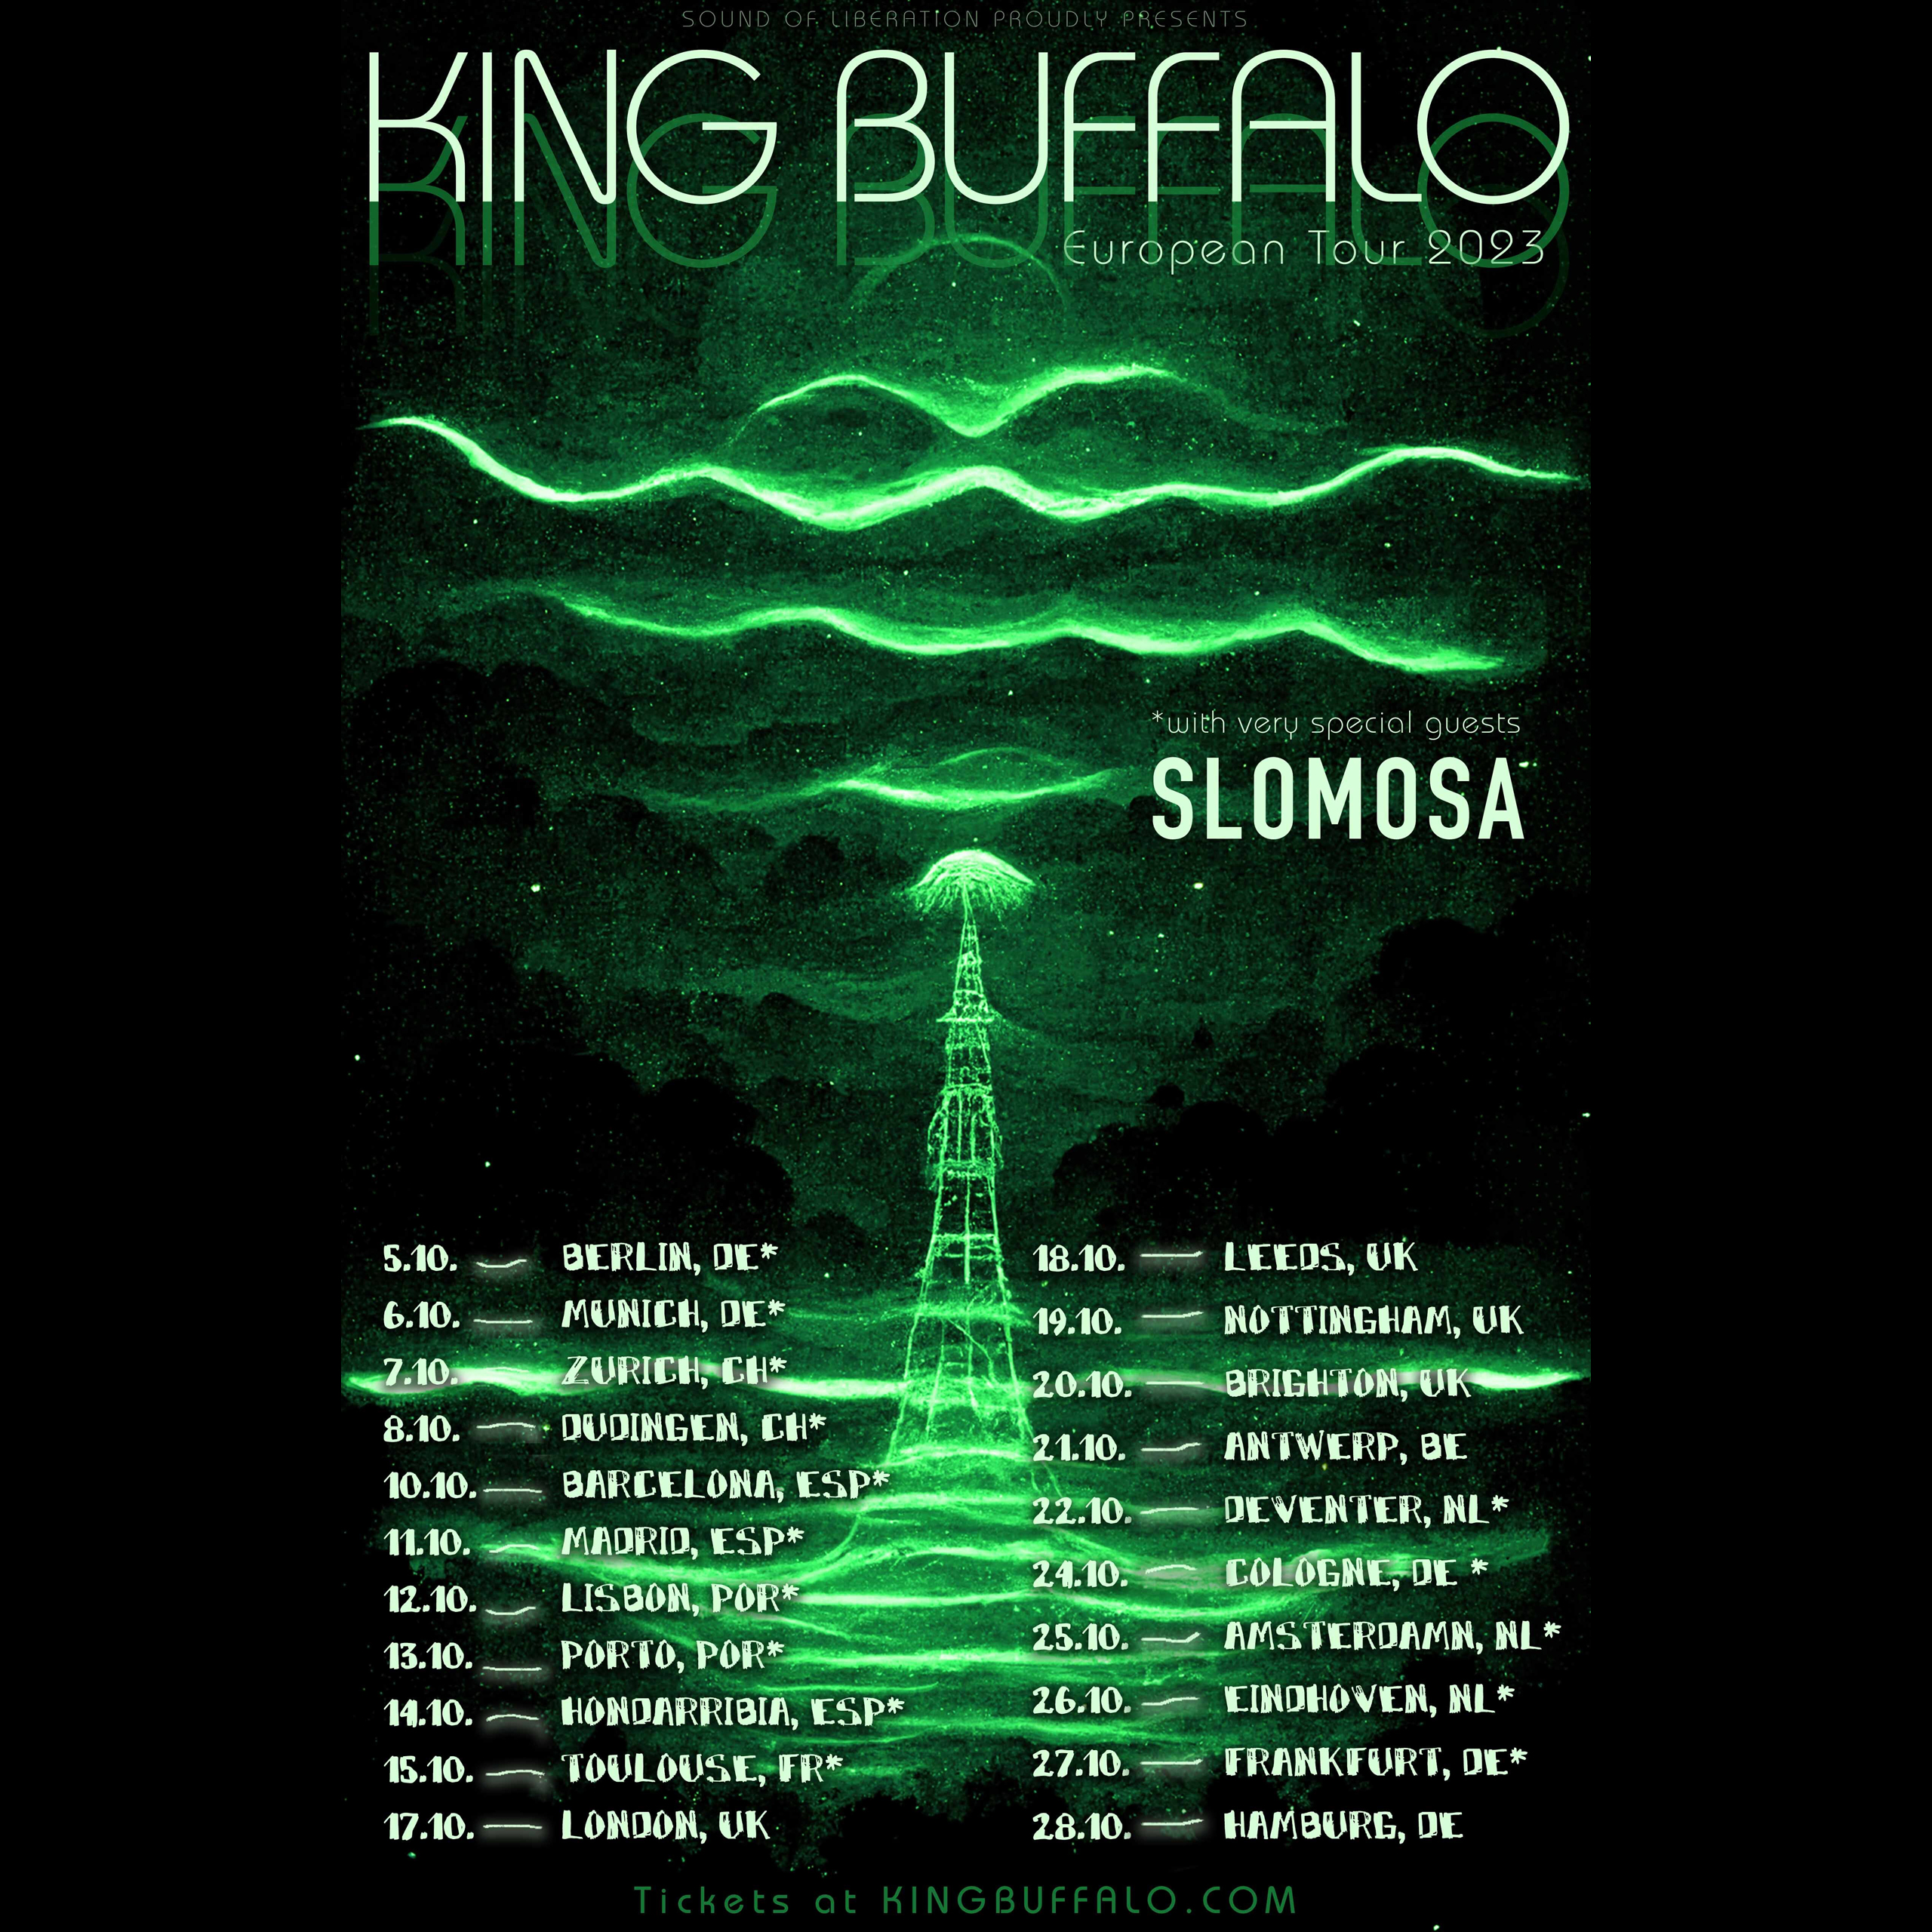 King-Buffalo-euro-tour-fall-2023.jpg